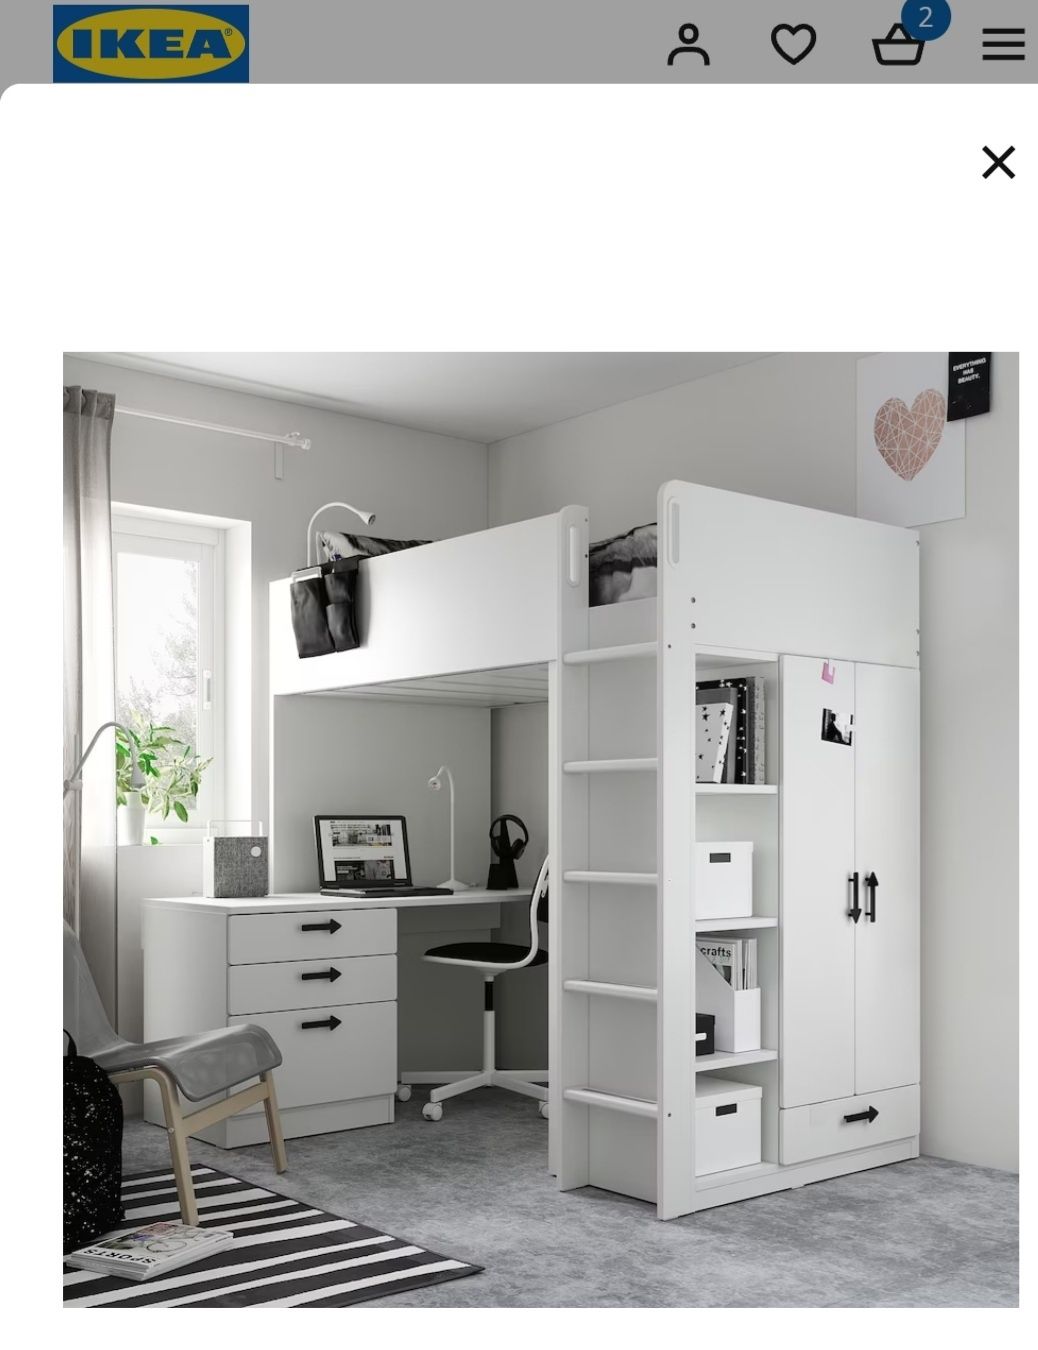 NOWA 1 sztuka Smastad biały front szuflada 15x60cm IKEA do biurka